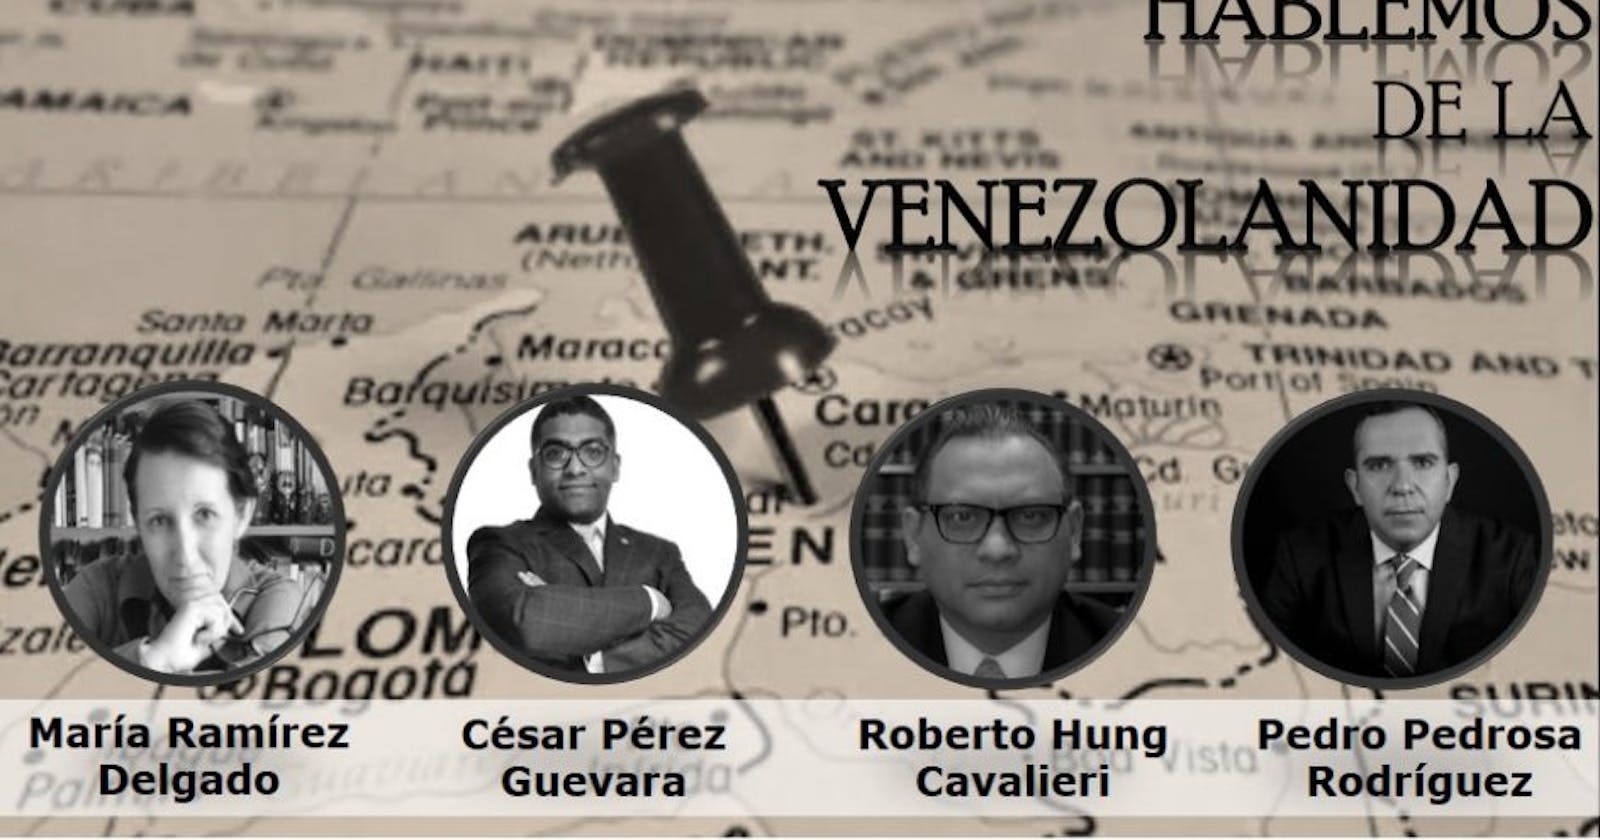 Actividad realizada: Hablemos de Venezolanidad